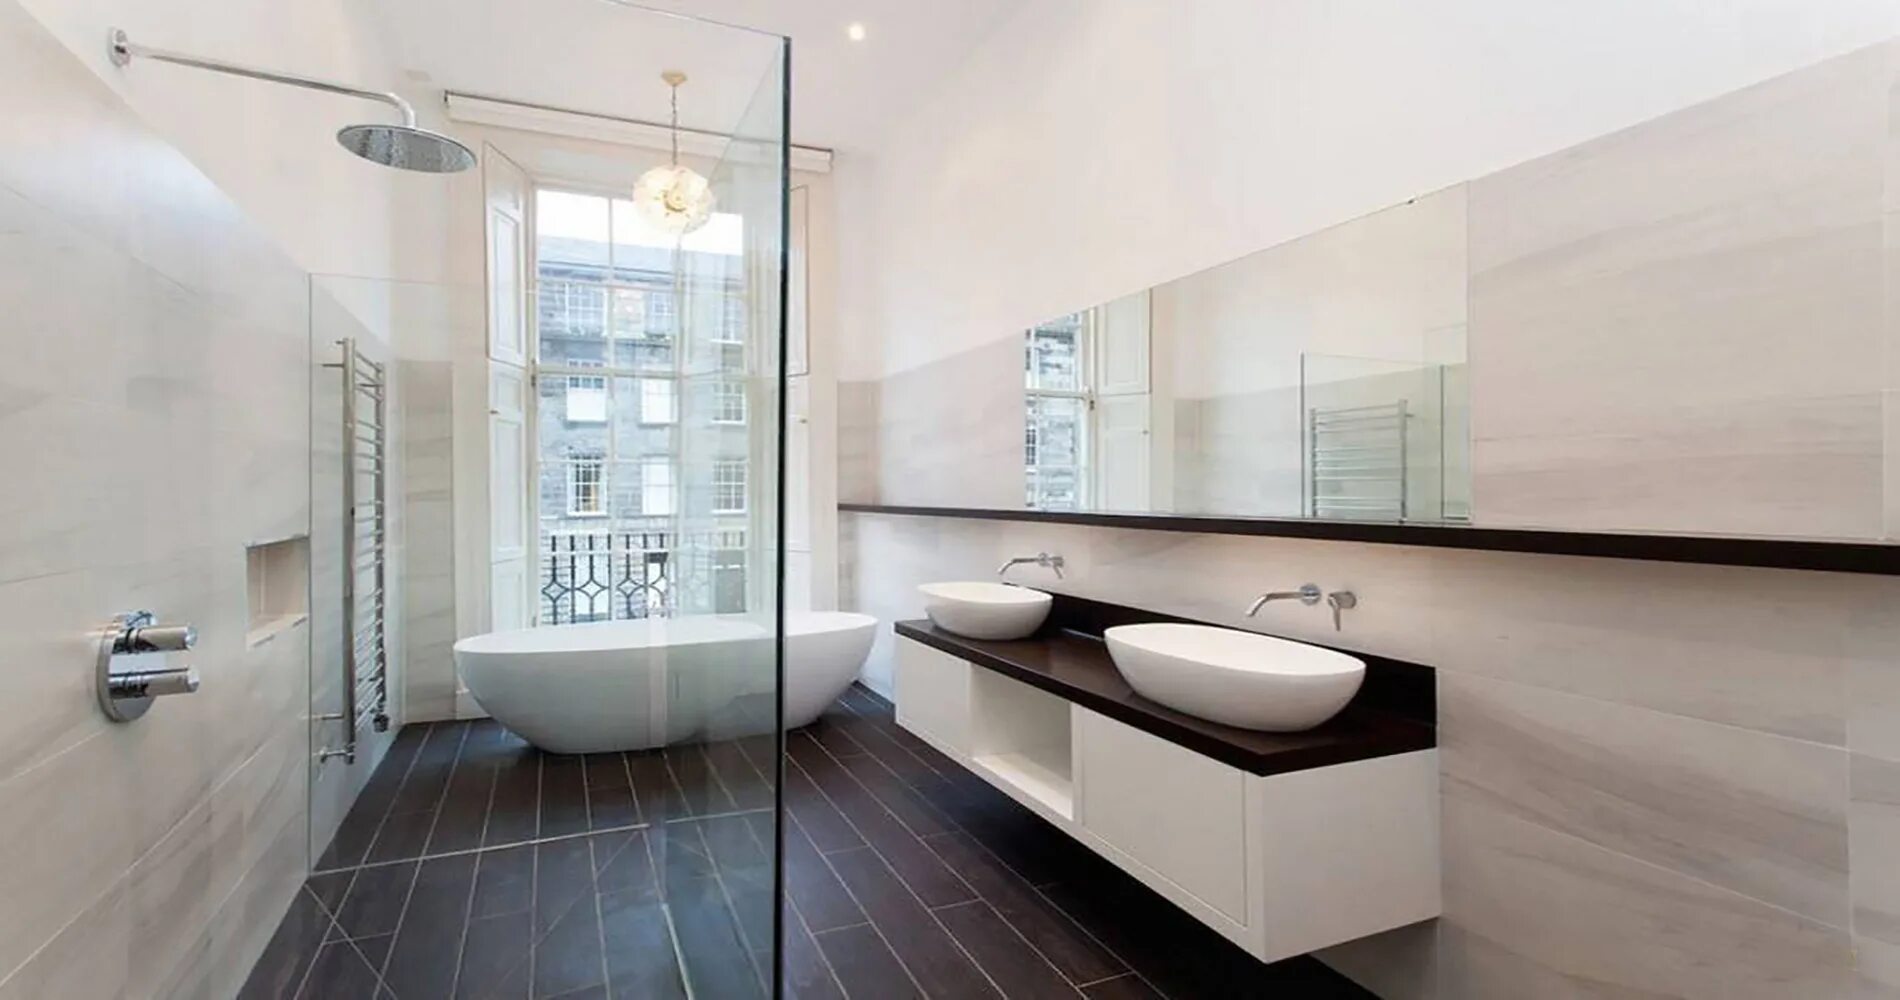 Ванная комната 2023 фото. Ванная комната. Современные Ванные комнаты 2021. Ванная комната в современном стиле 2021. Ванная с душевой Контемпорари.